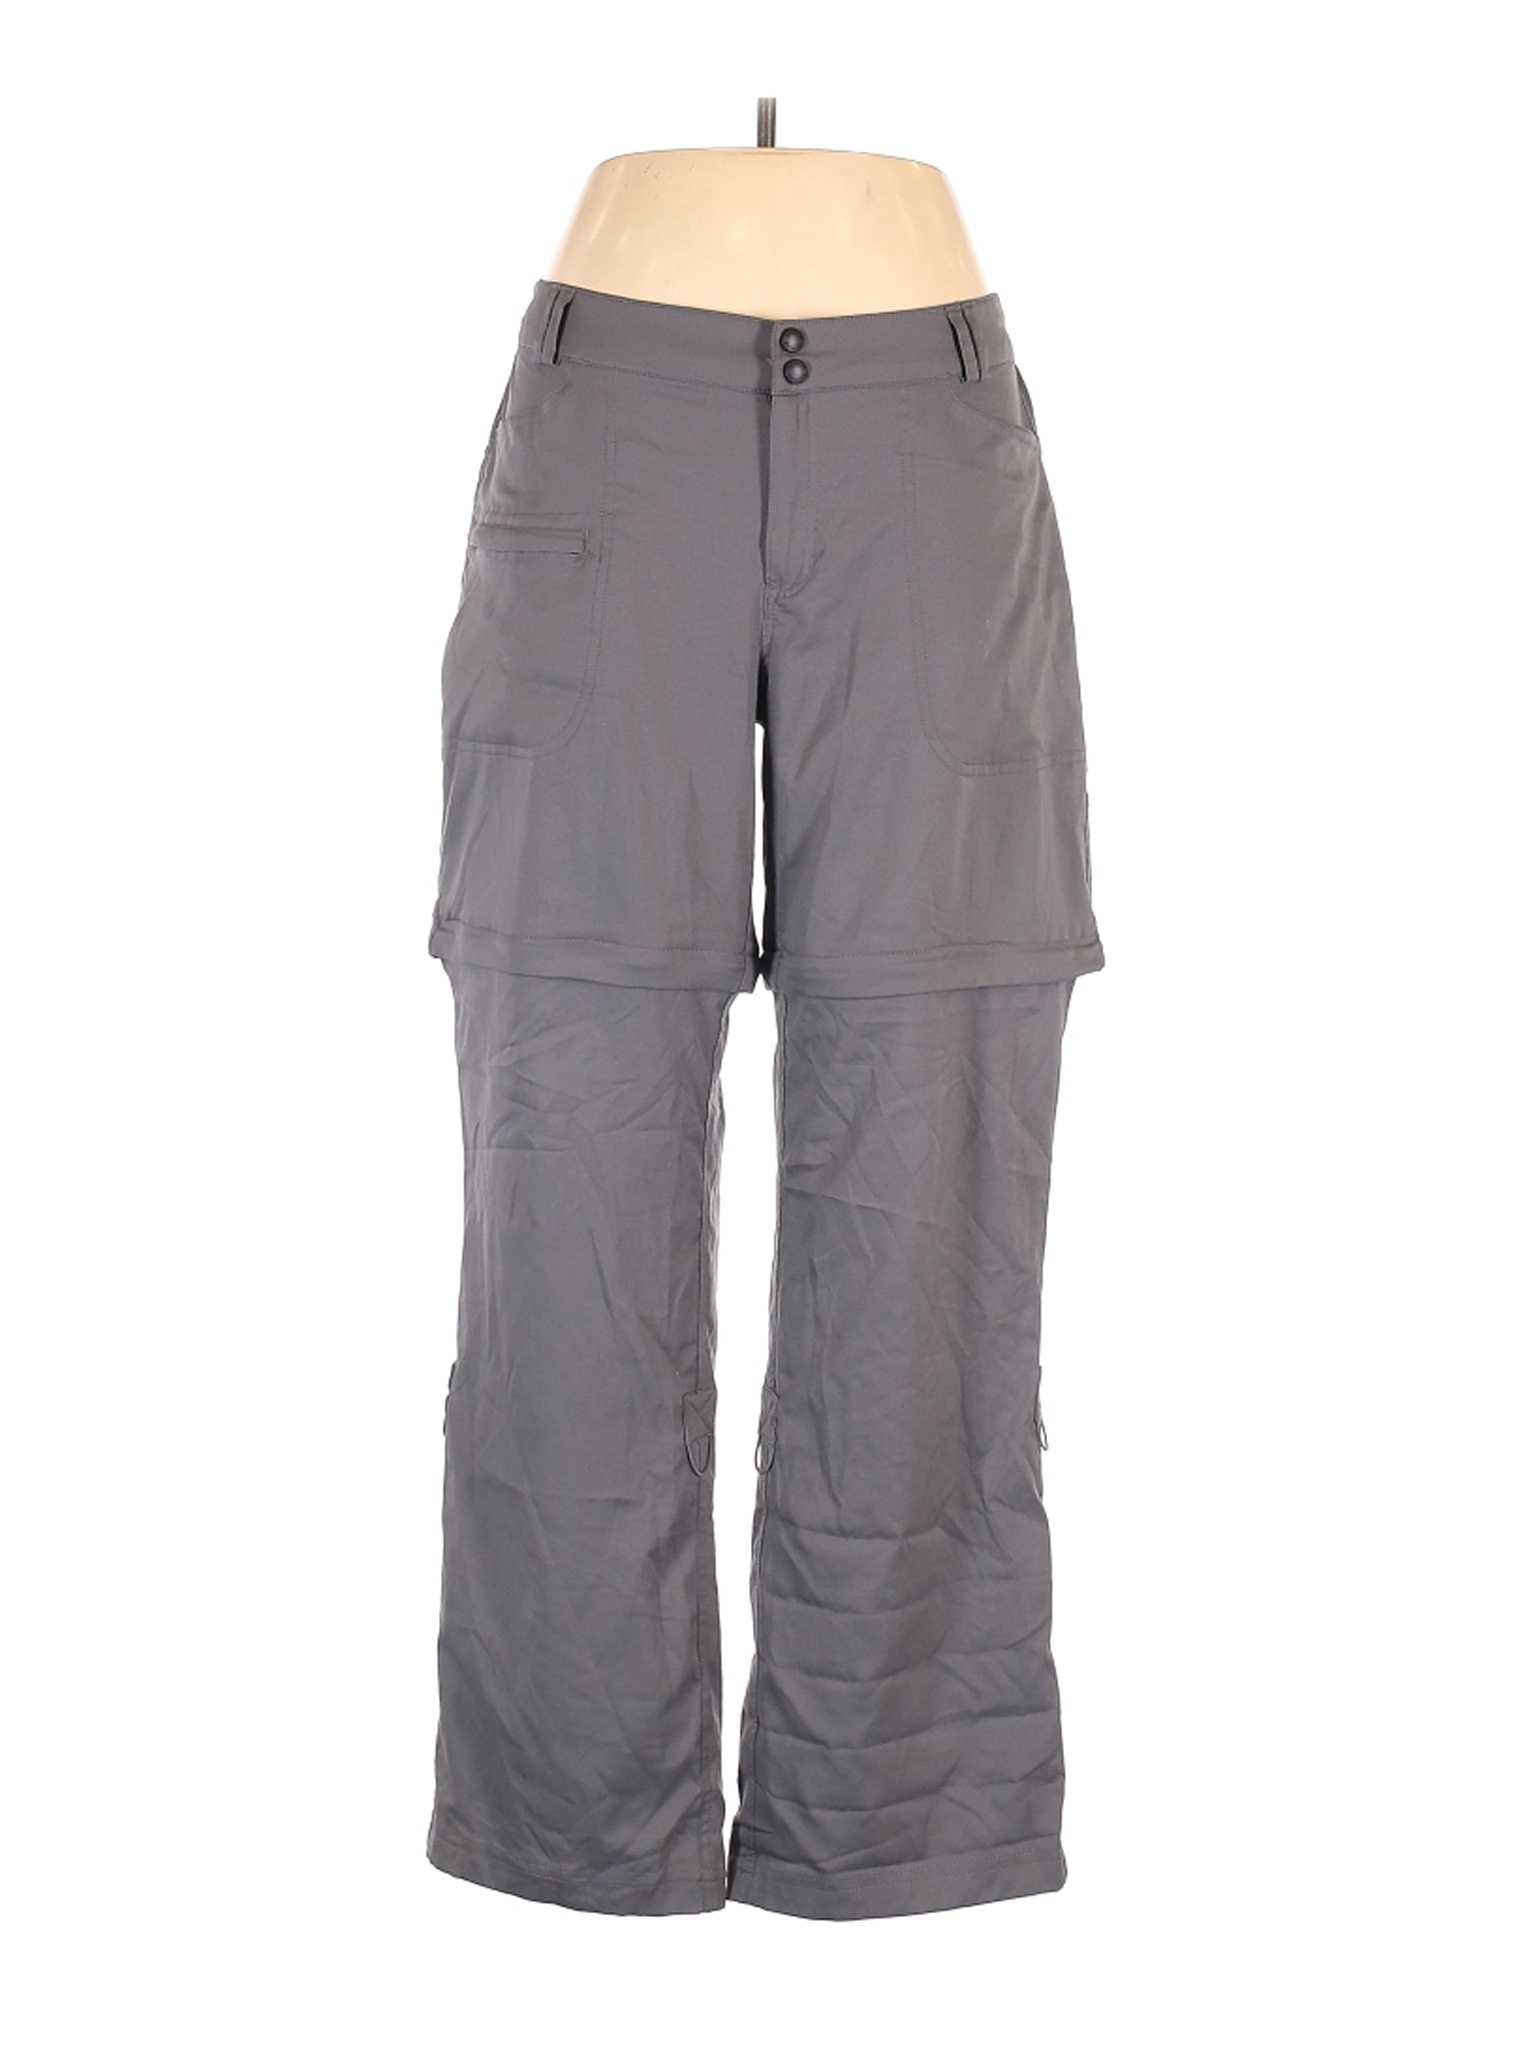 Magellan Sportswear Women Gray Cargo Pants XL | eBay